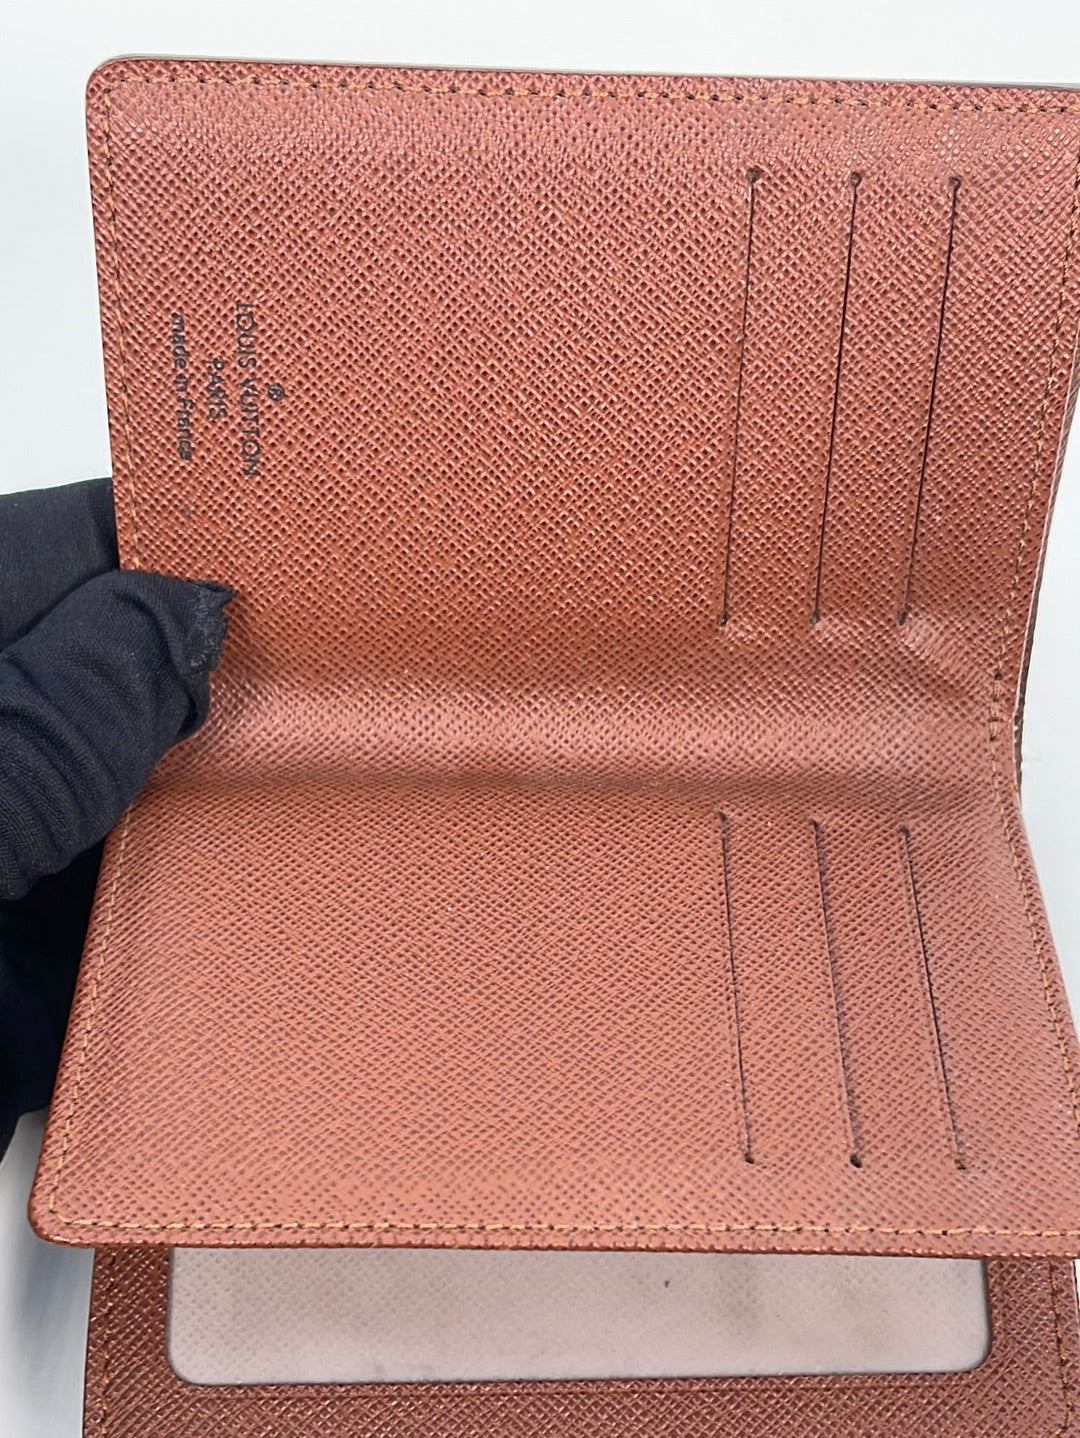 Louis Vuitton Joey Damier Ebene Bi-Fold Wallet on SALE